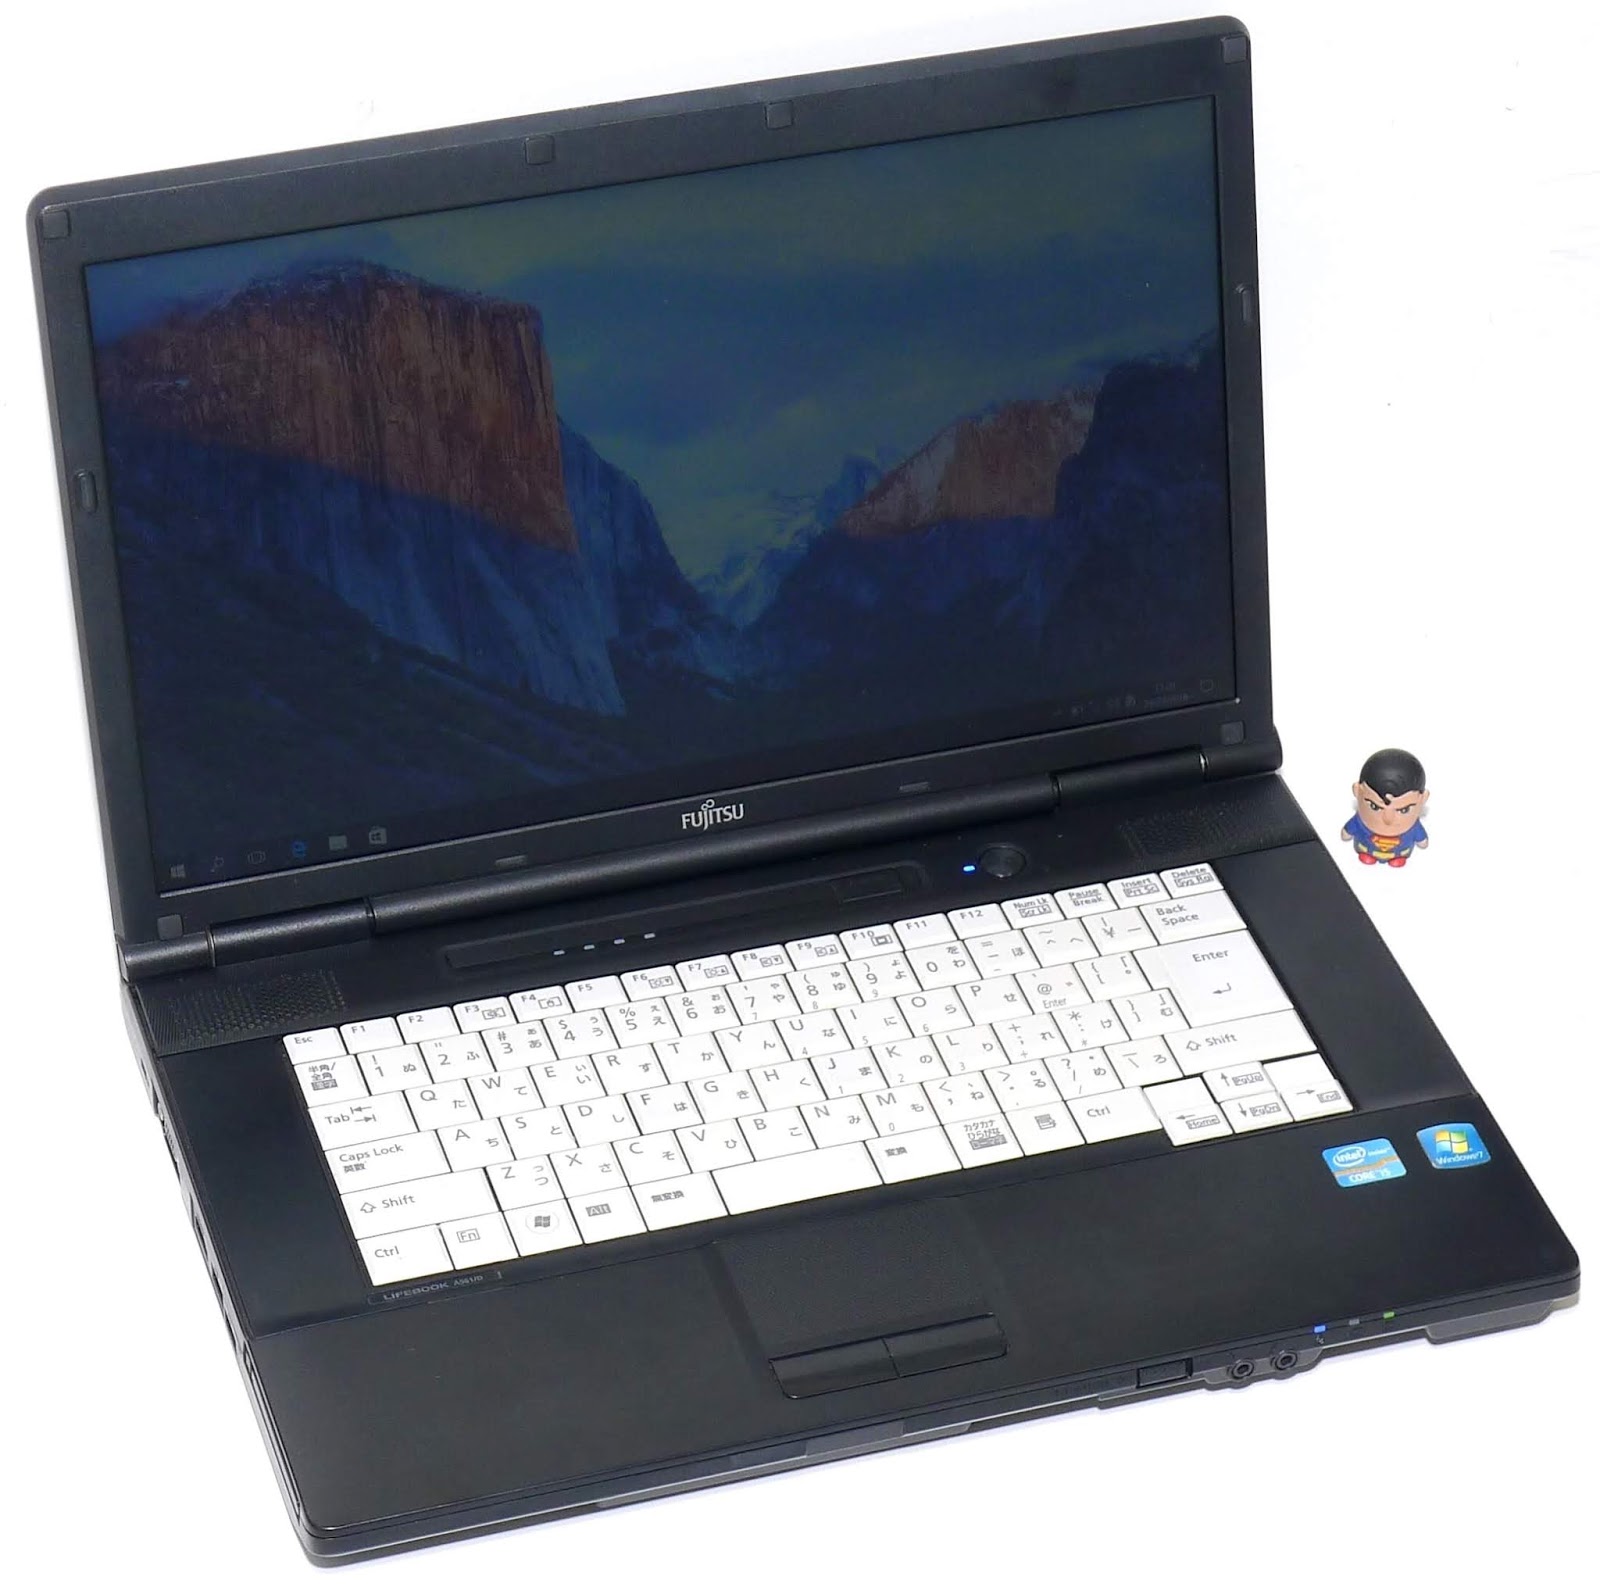  Jual  Laptop Fujitsu A561 Core i5 Second di Malang  Jual  